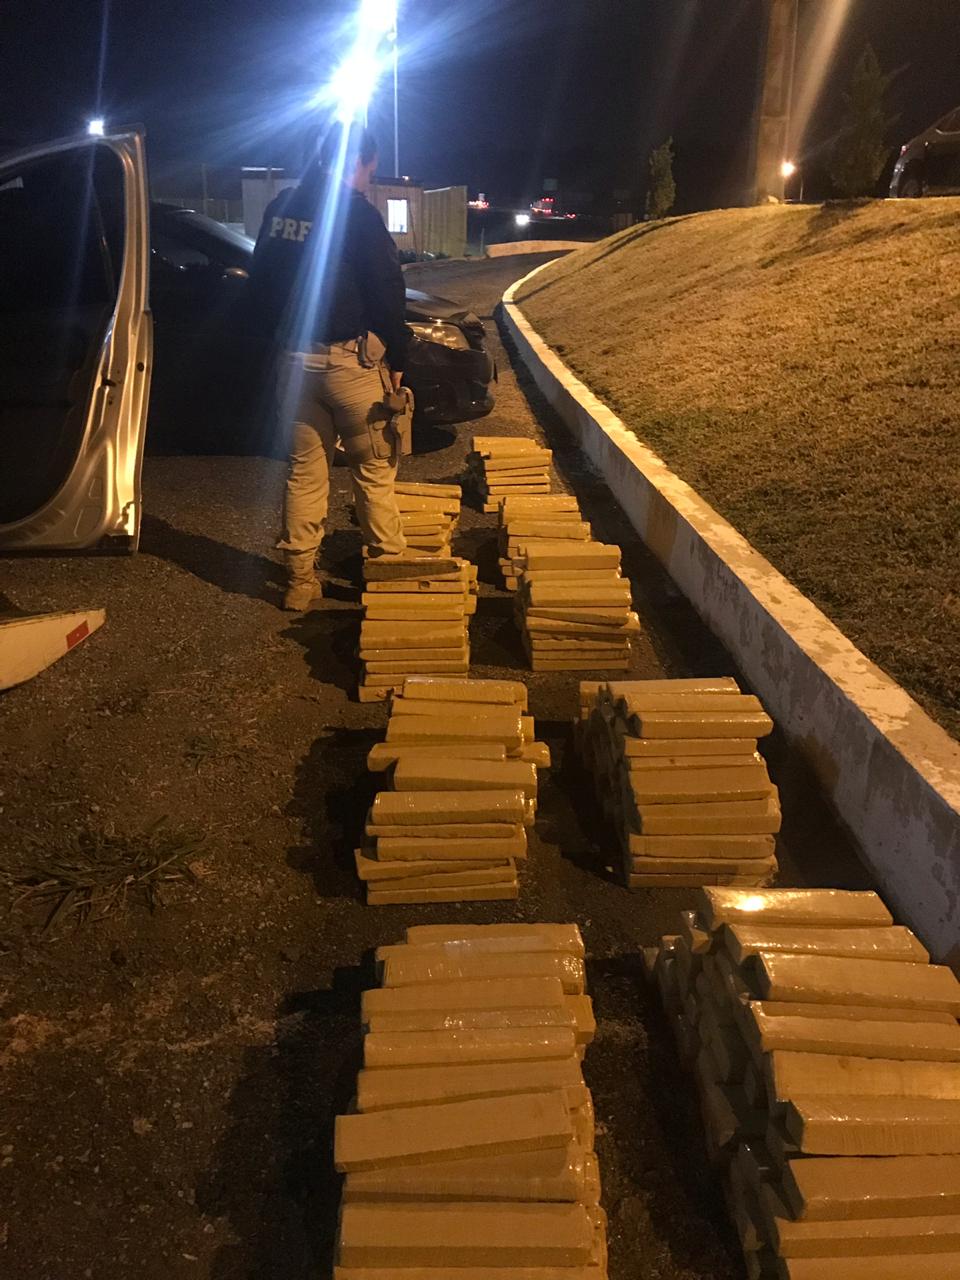  PRF apreende 454 tabletes de maconha em São José dos Pinhais após veículo se envolver em acidente